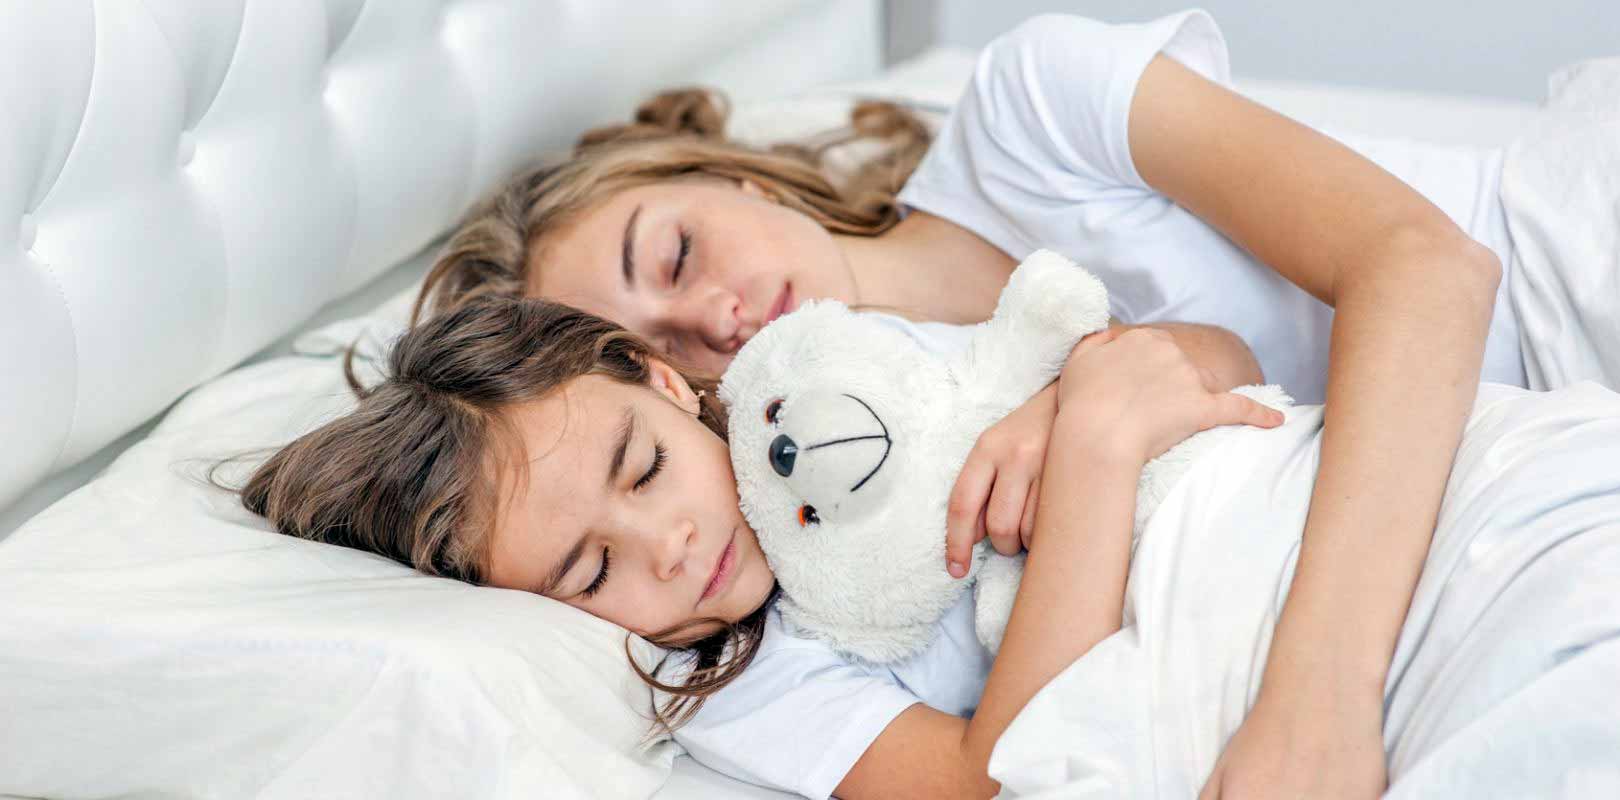 Ab wann müssen Kinder alleine schlafen?